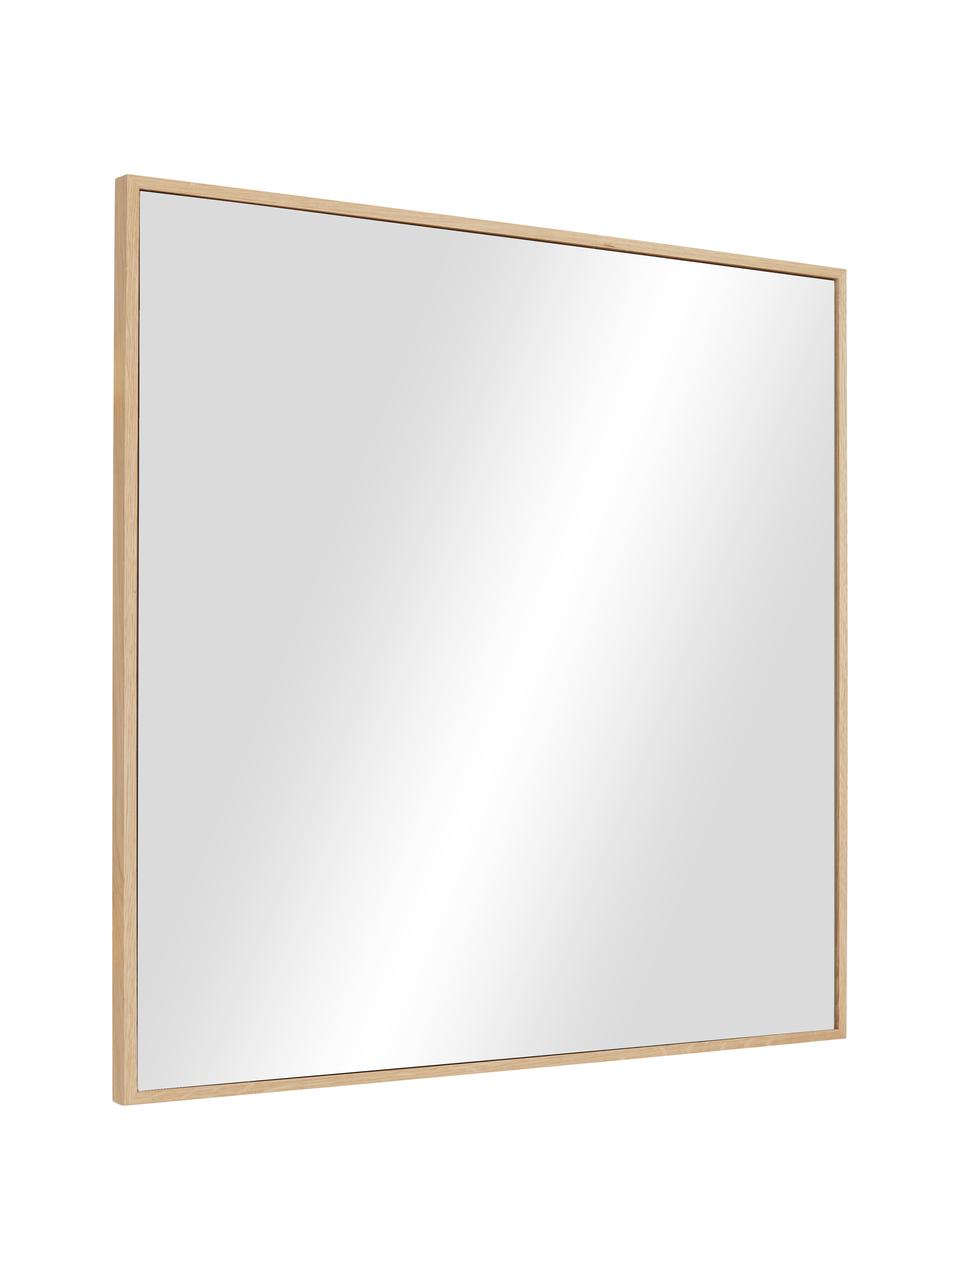 Eckiger Wandspiegel Avery mit braunem Eichenholzrahmen, Rahmen: Eichenholz, FSC-zertifizi, Spiegelfläche: Spiegelglas, Eichenholz, B 55 x H 55 cm